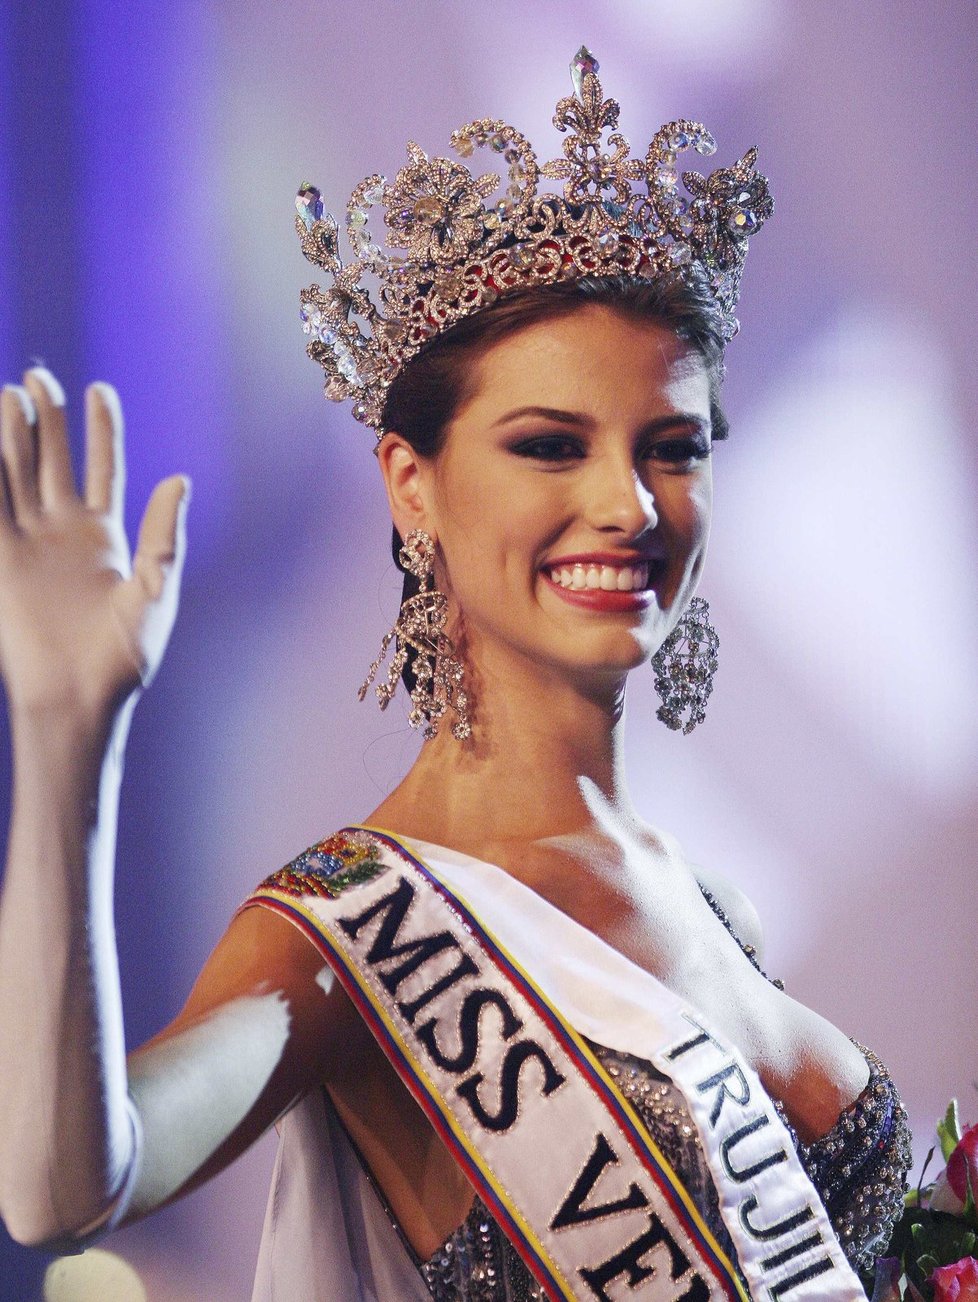 Stefania Fernandez v roce 2008, kdy se radovala z titulu Miss Universe.